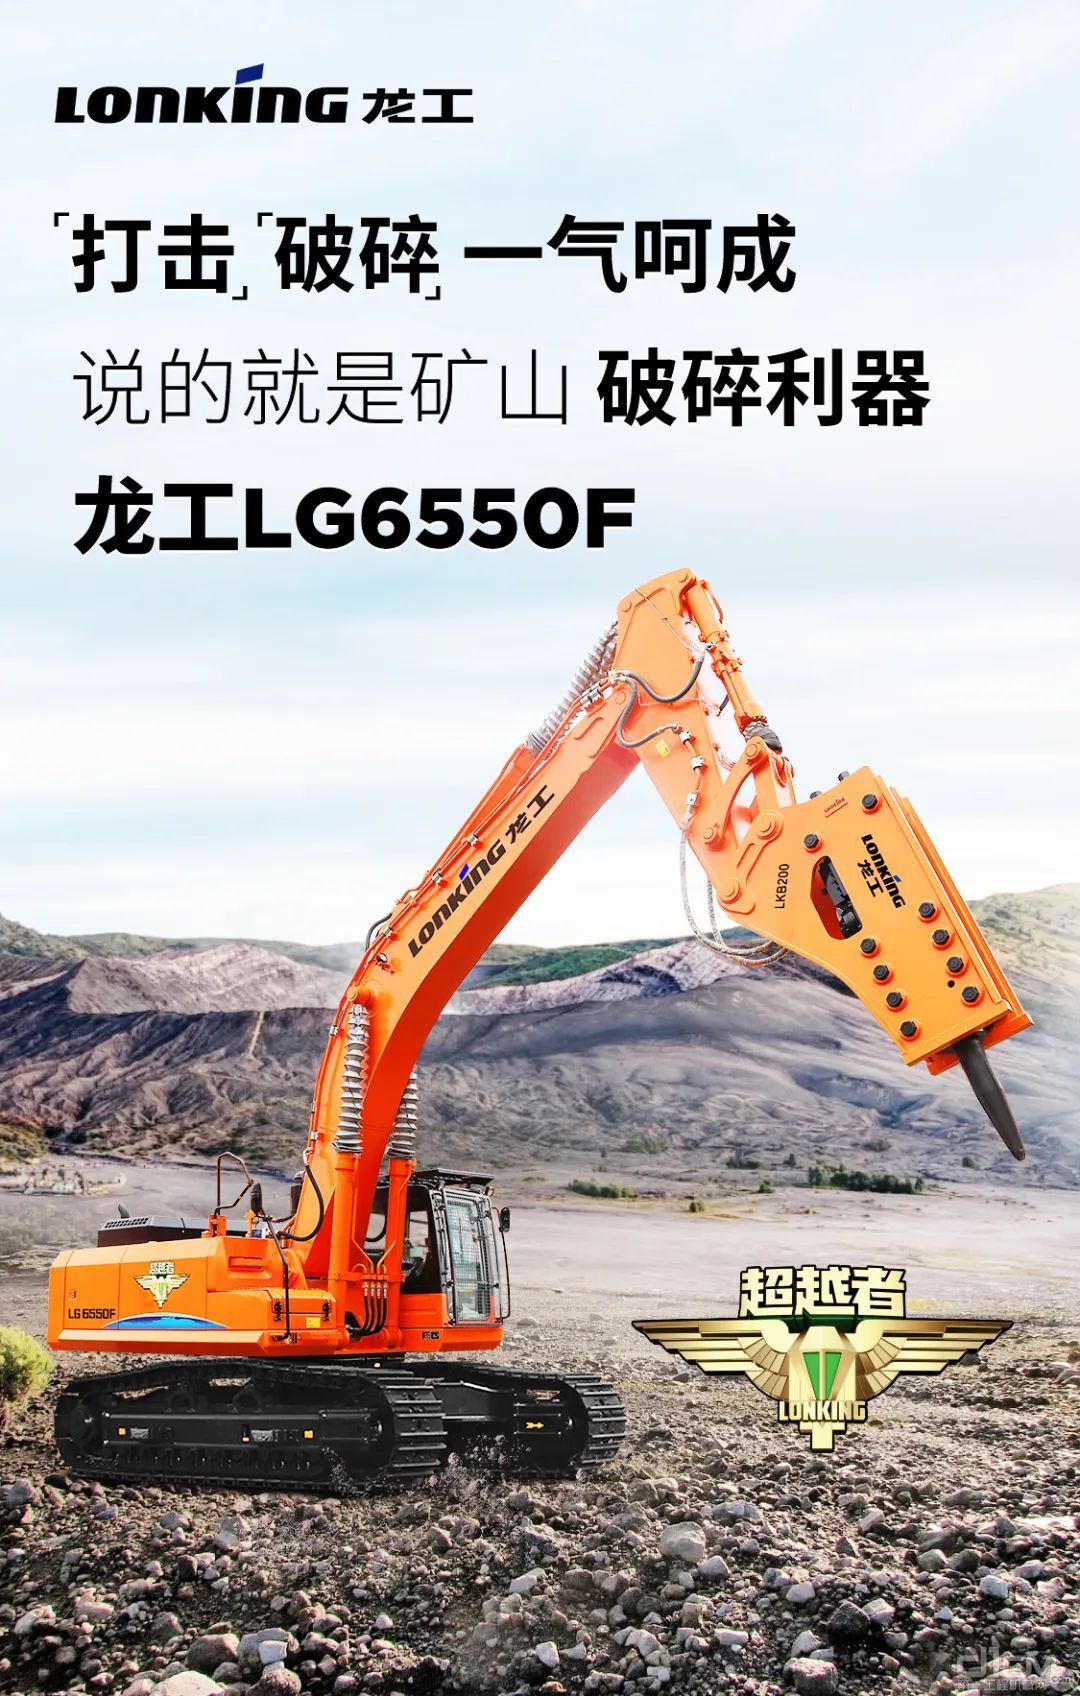 龙工超越者系列LG6550F挖掘机